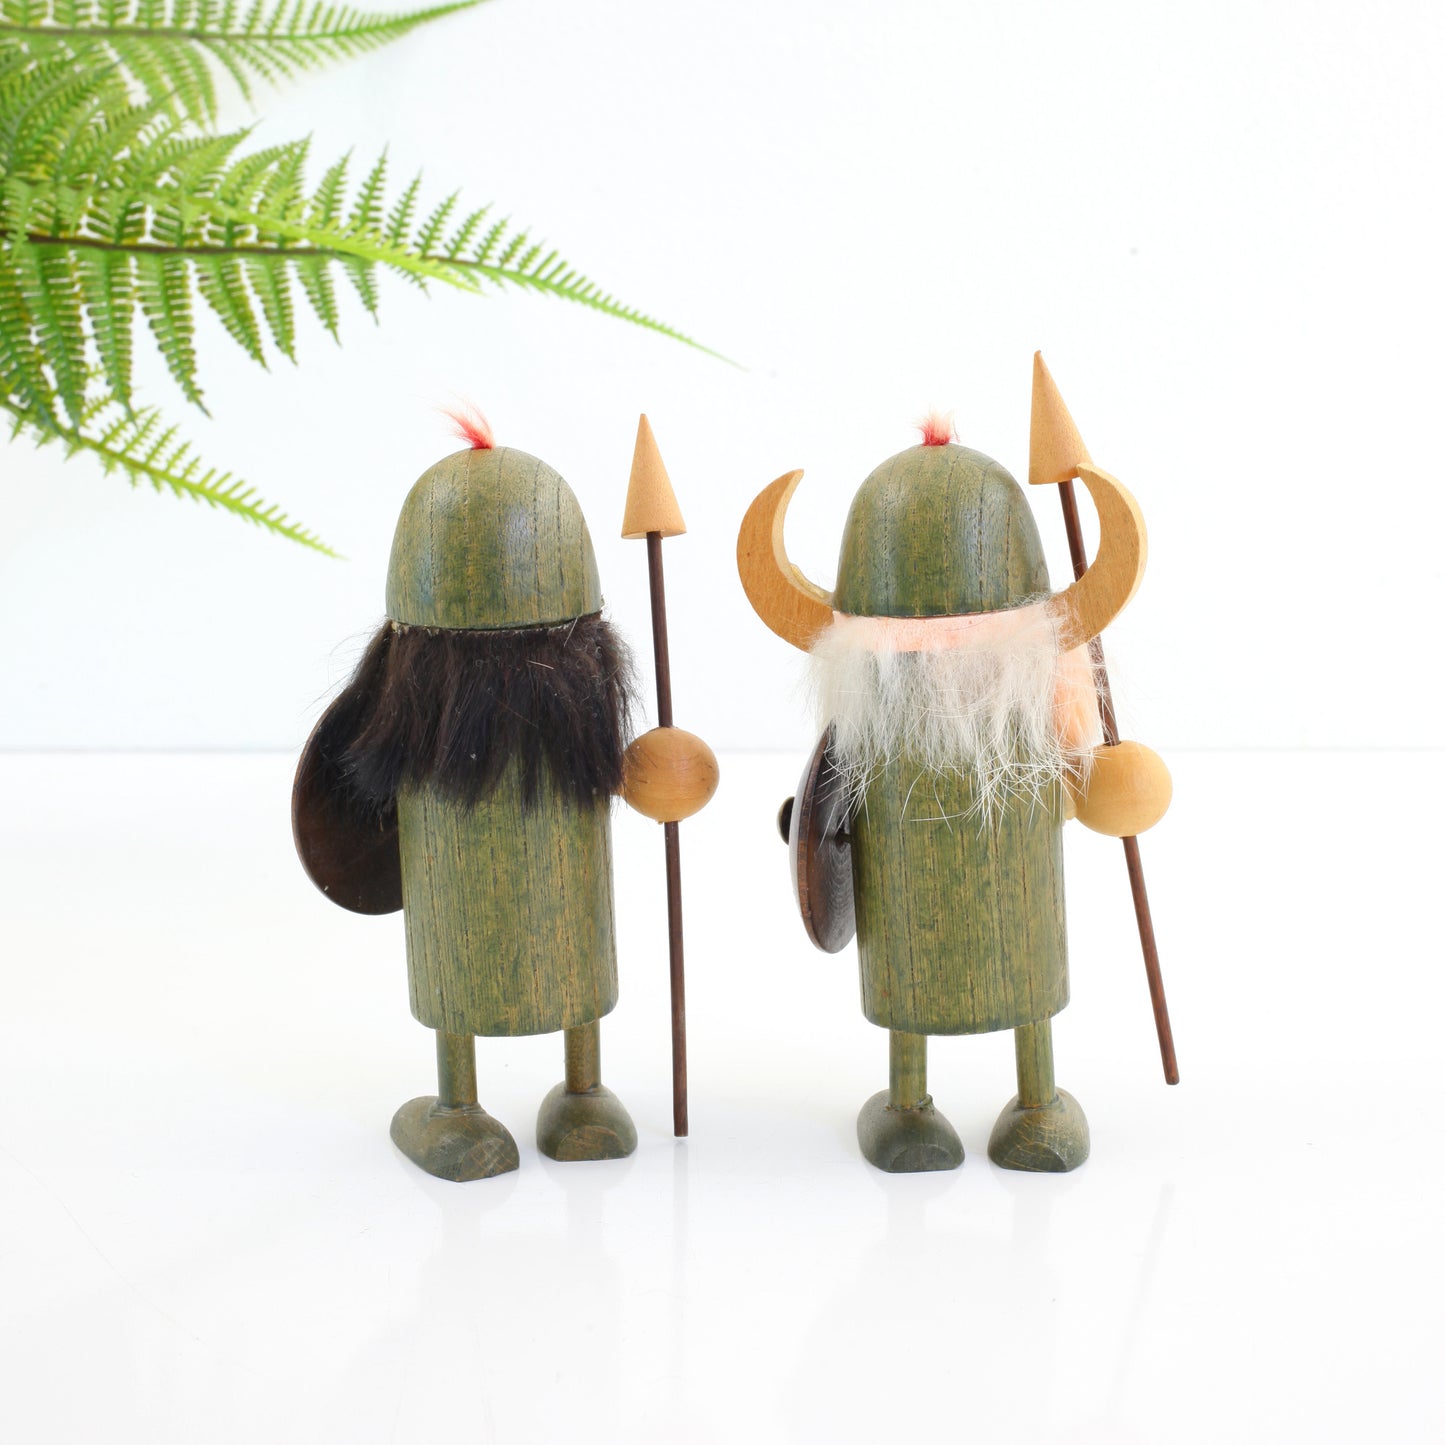 SOLD - Pair of Vintage Wood Viking Figurines